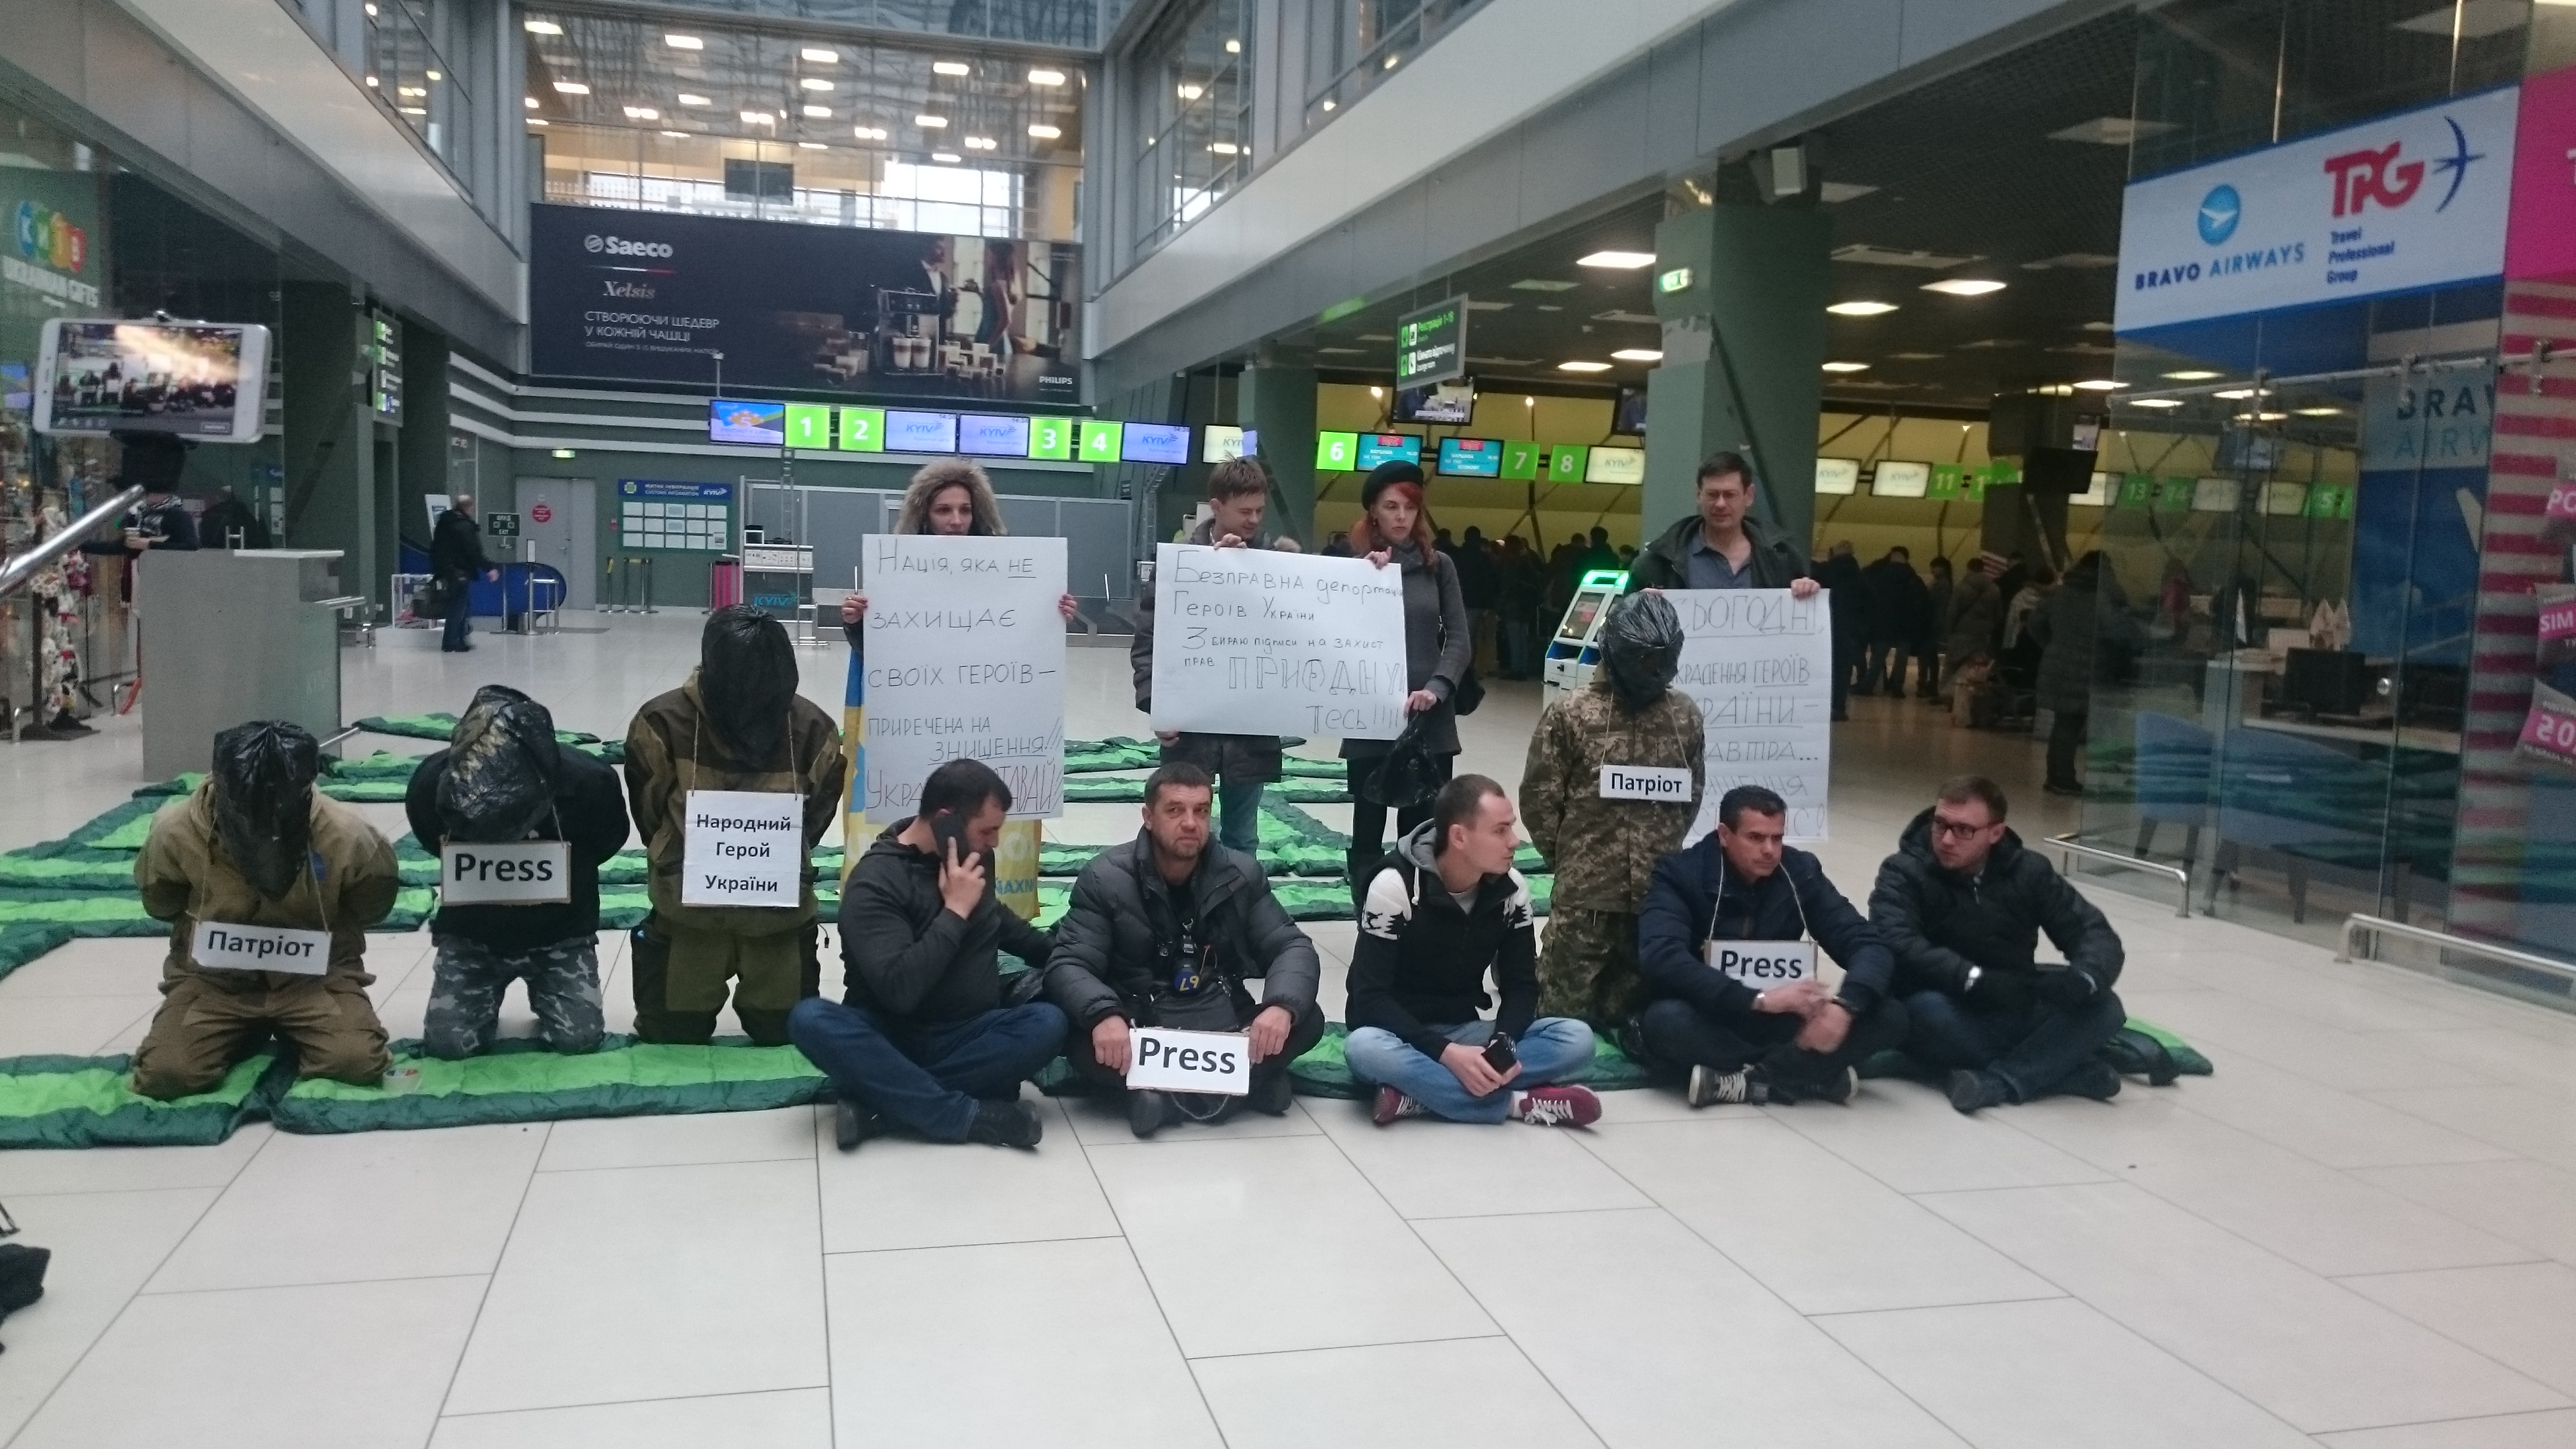 Соратники Саакашвили протестуют в аэропорту "Жуляны" - активисты из партии Михо вышли против незаконного задержания граждан Грузии